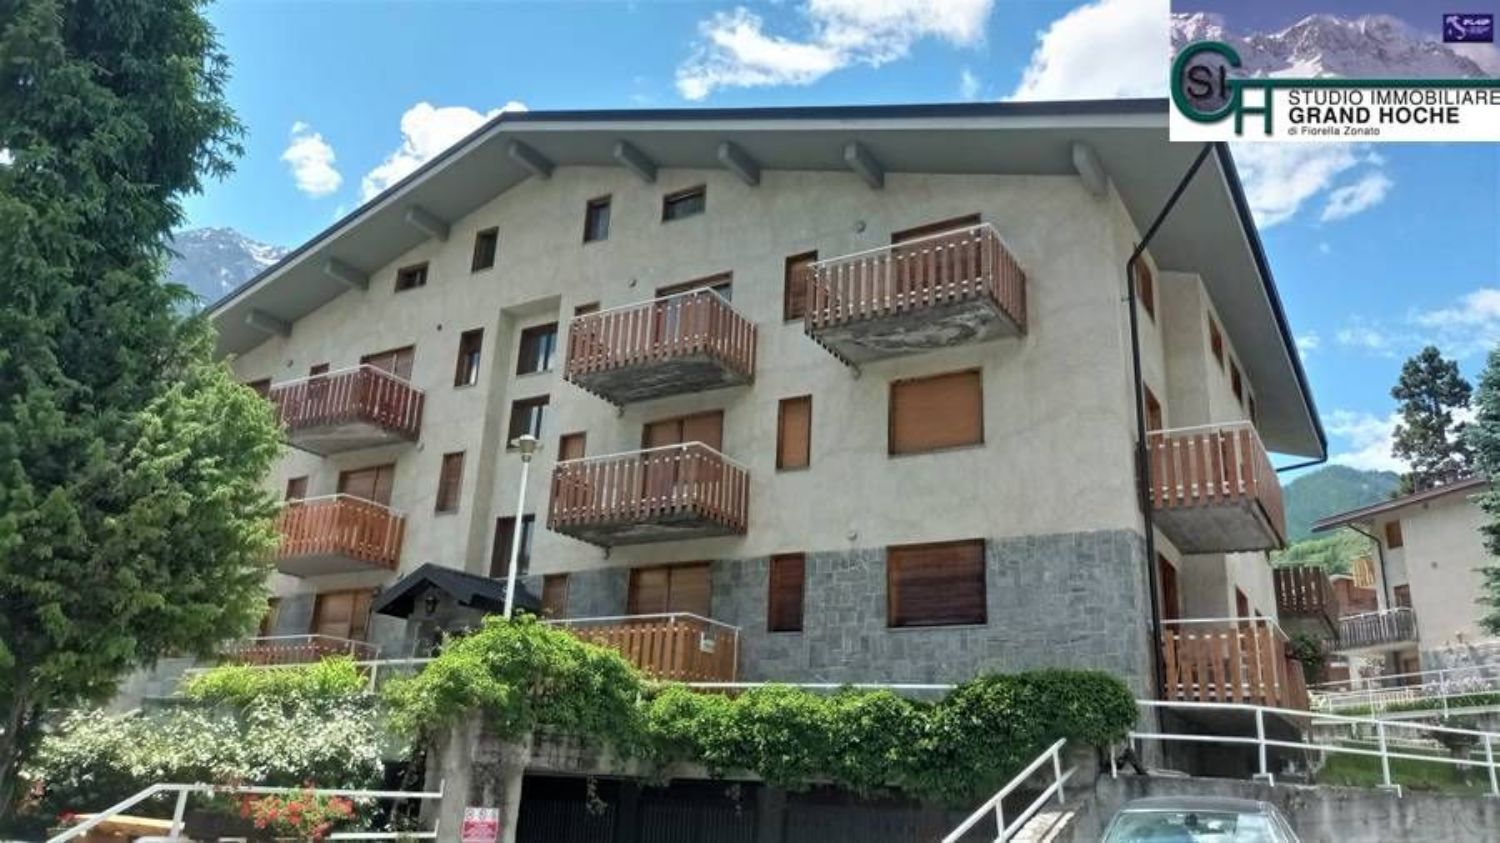 Appartamento in affitto a Oulx, 2 locali, prezzo € 850 | CambioCasa.it